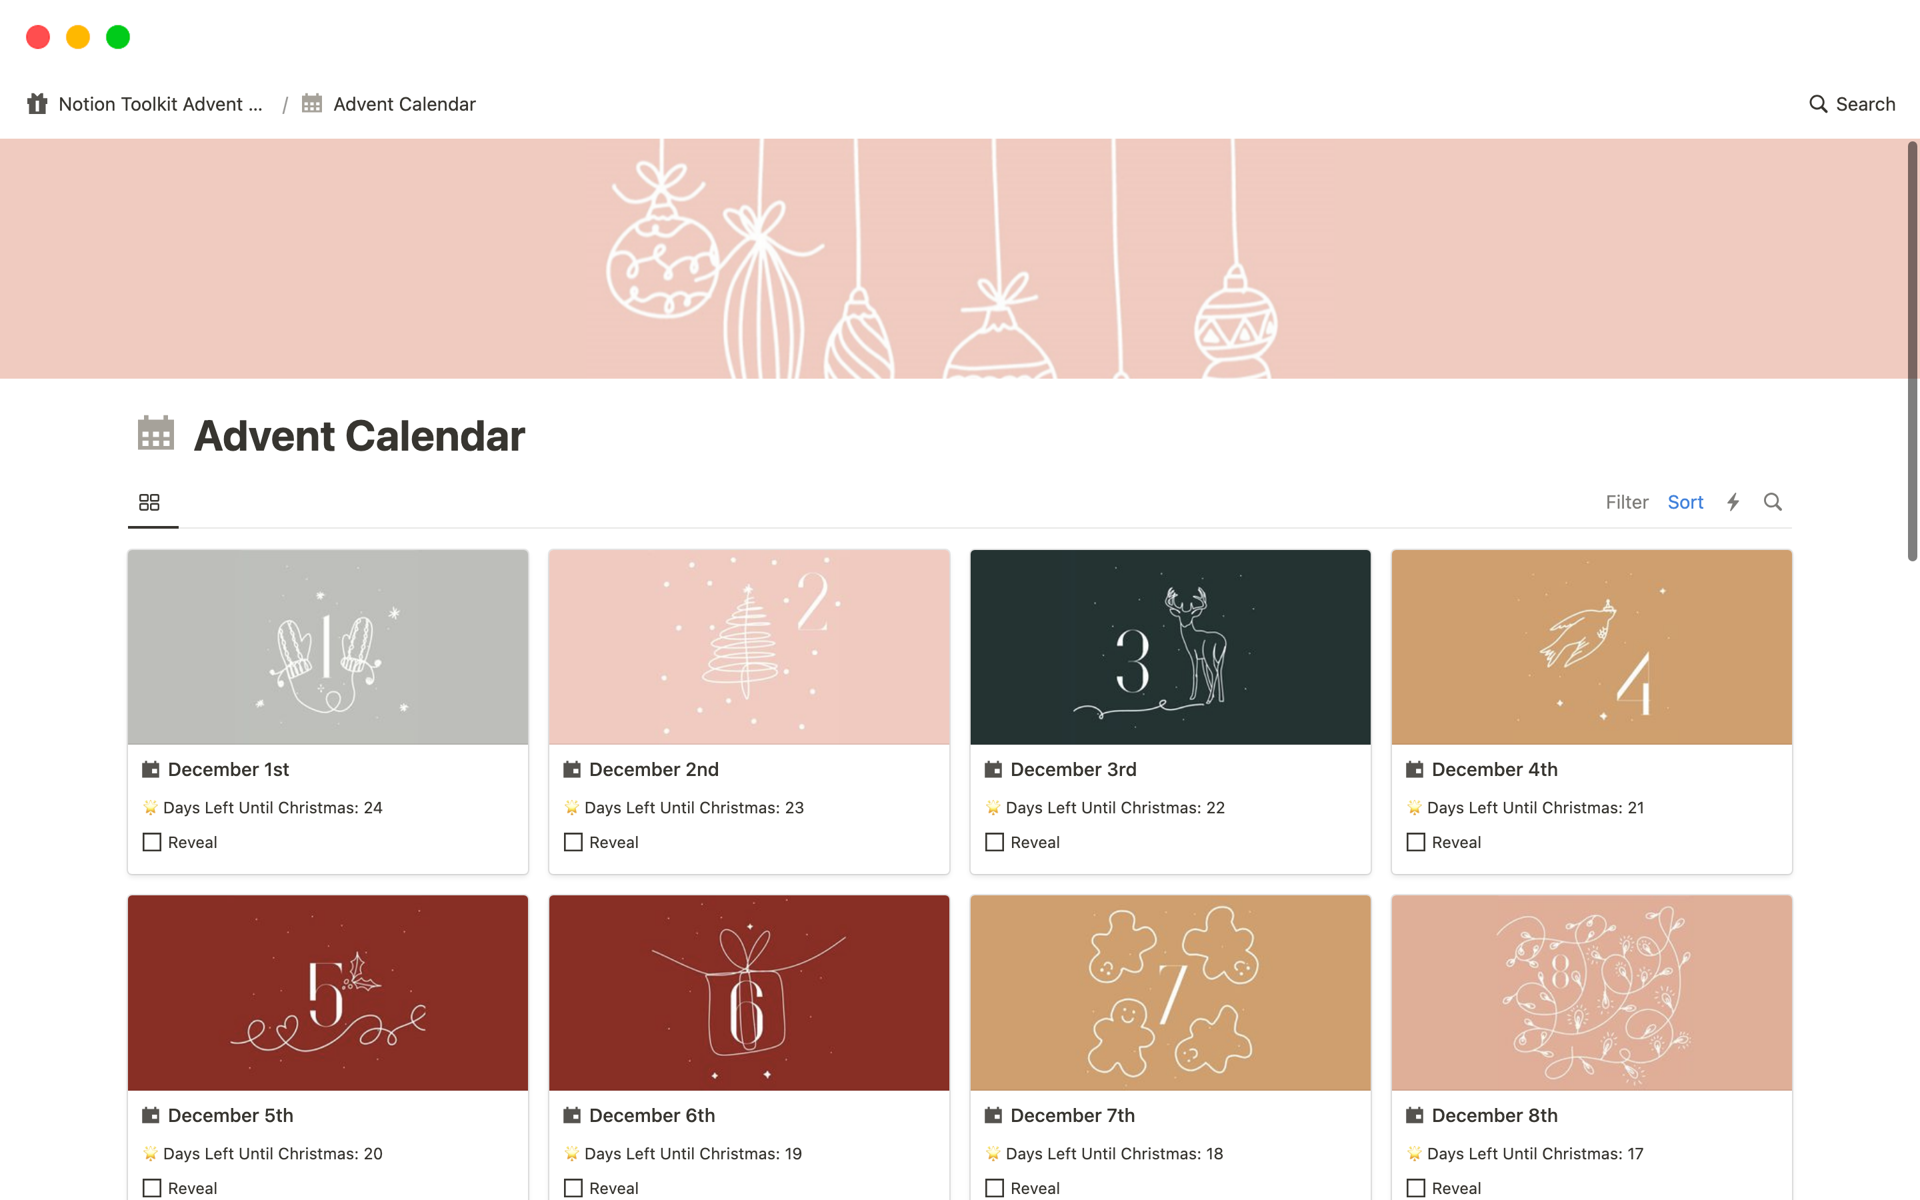 Mallin esikatselu nimelle Notion Toolkit Advent Calendar